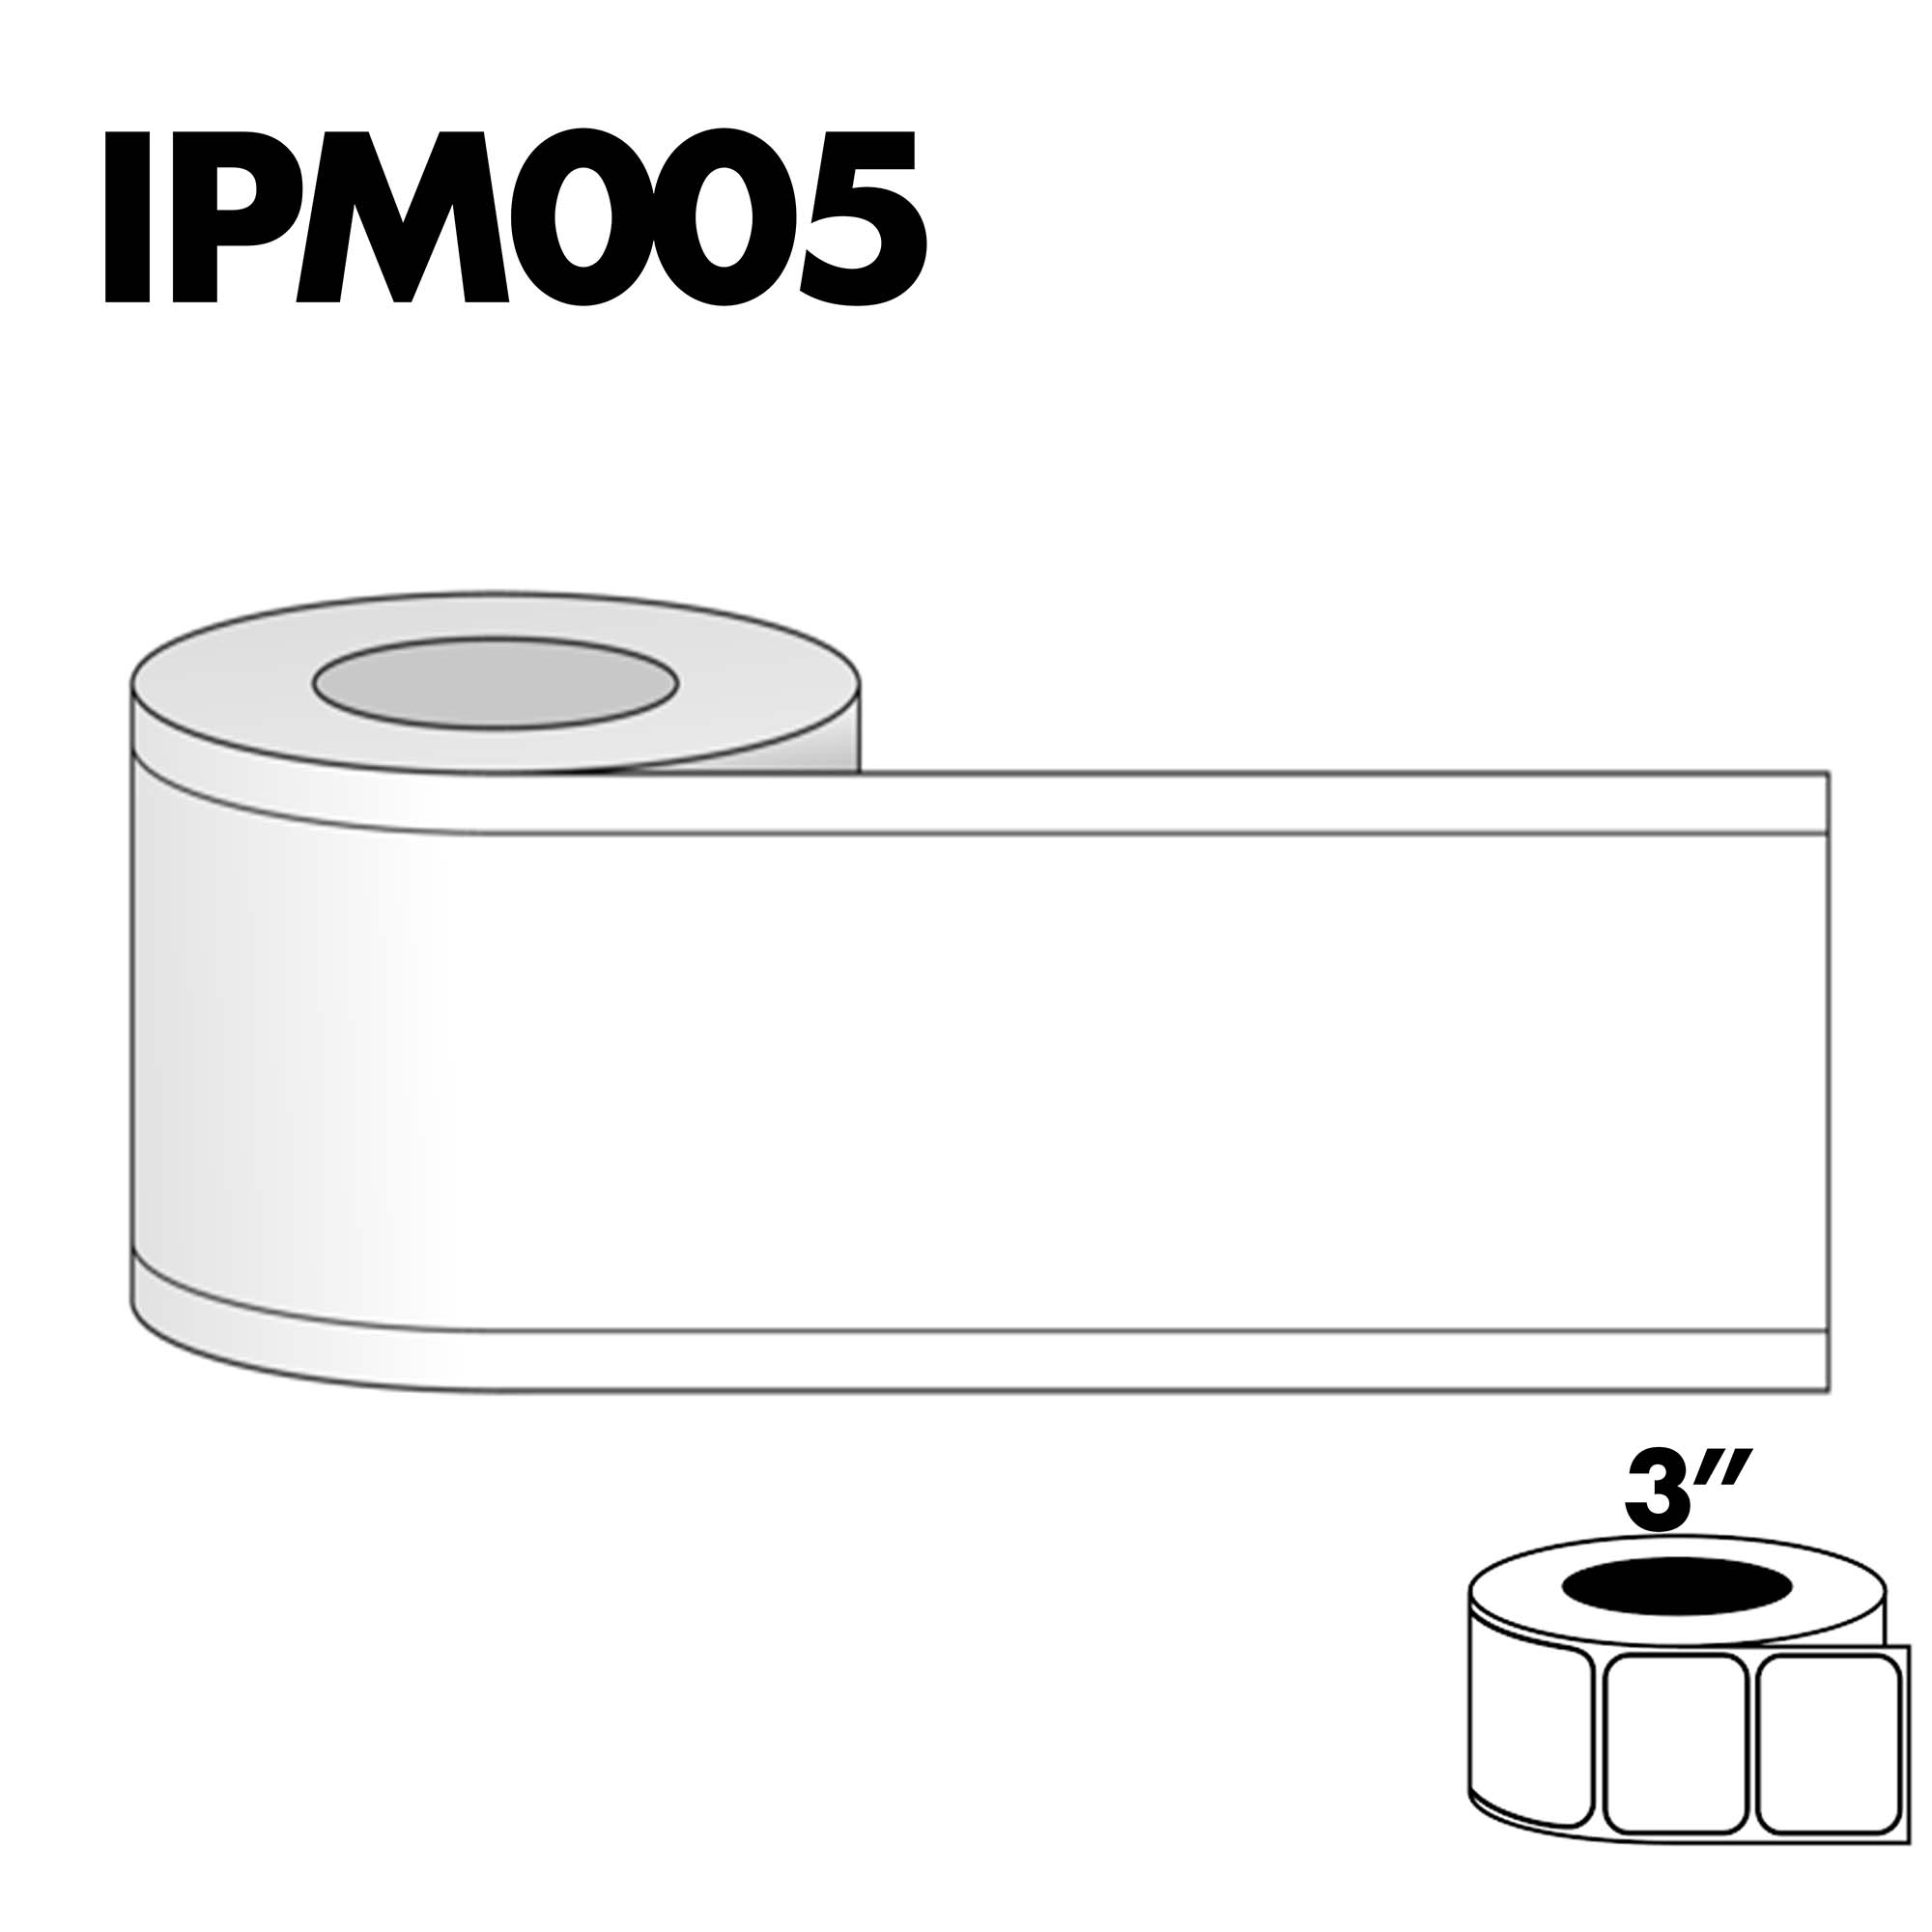 IPM005